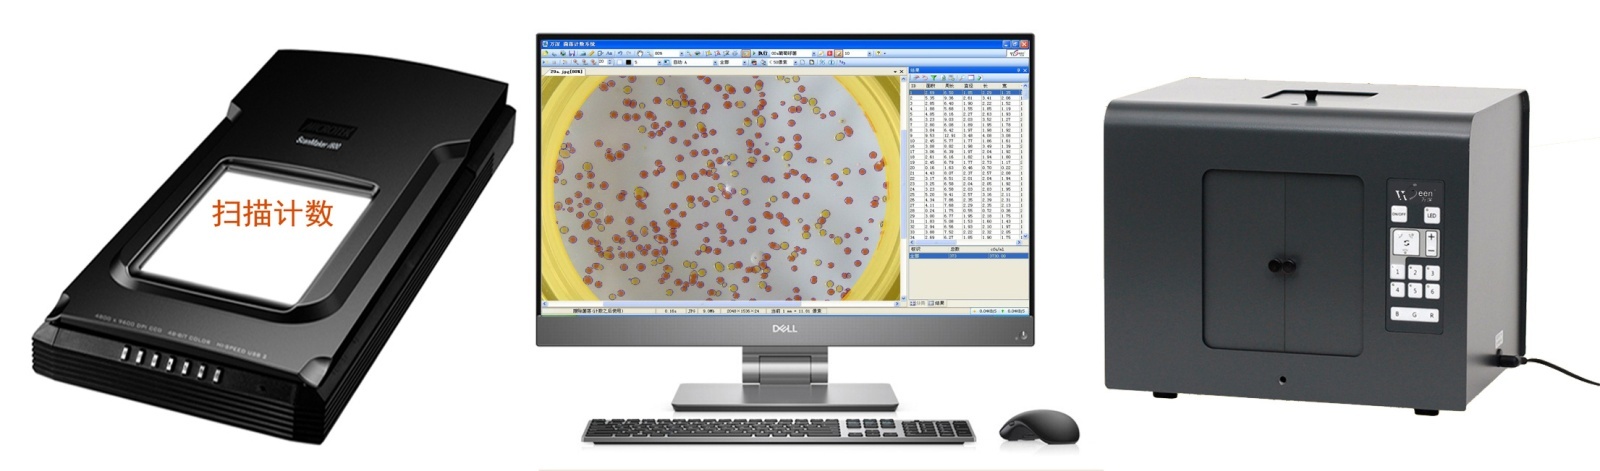 全自动菌落计数抑菌圈测量药敏效价分析仪的图片